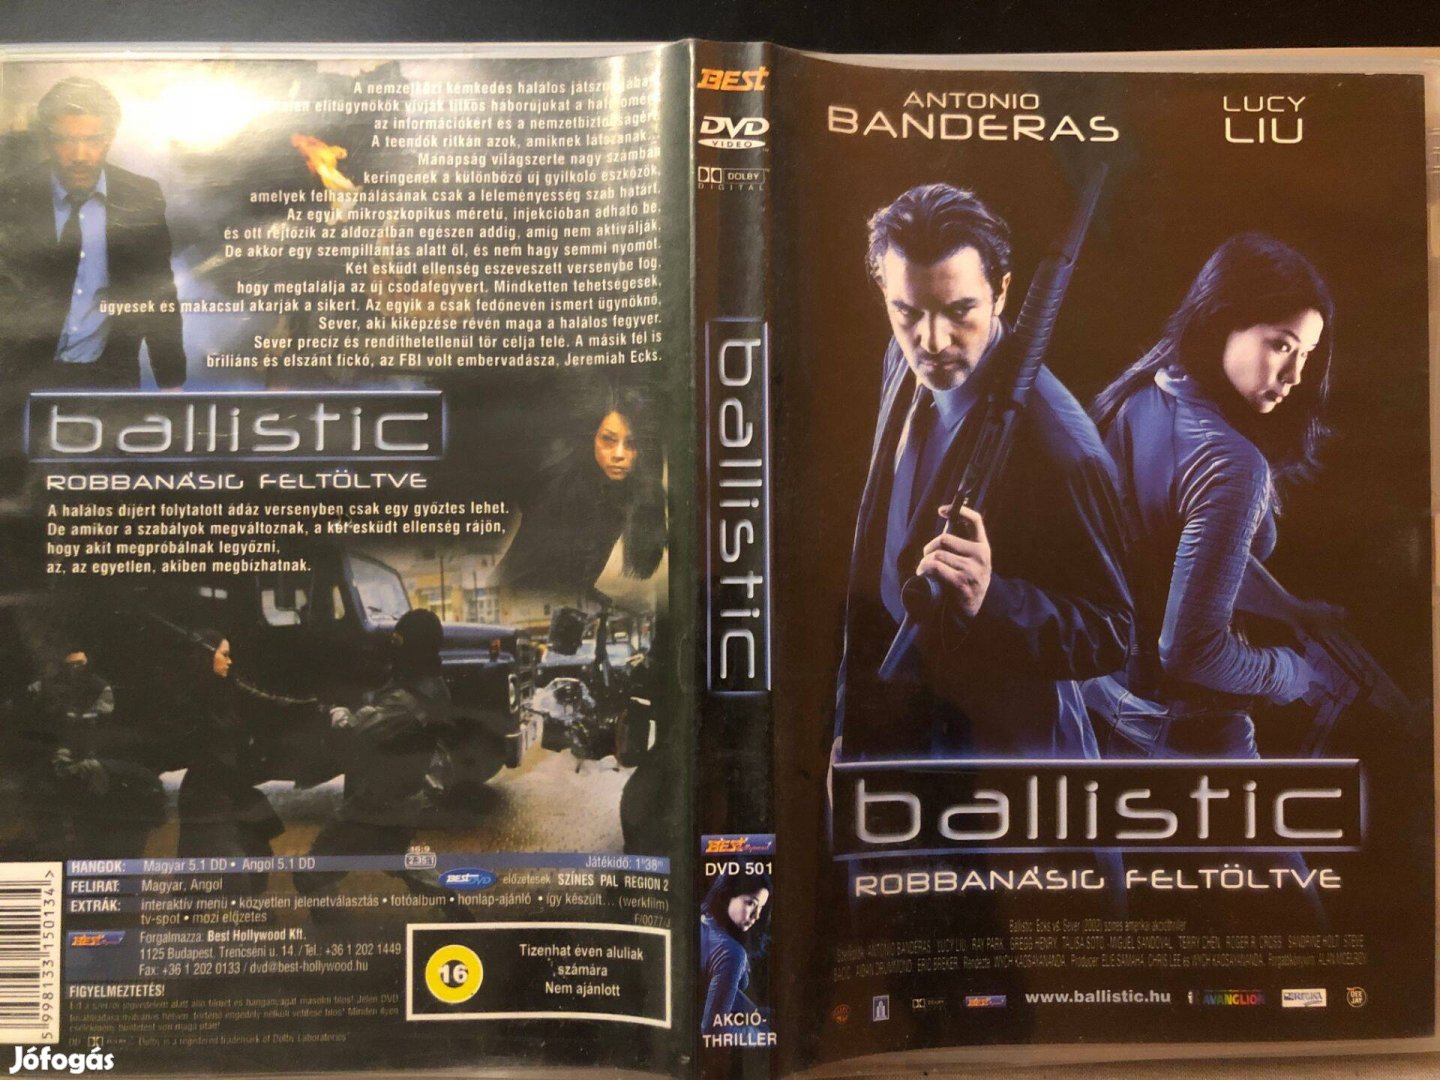 Ballistic Robbanásig feltöltve (karcmentes, Antonio Banderas) DVD